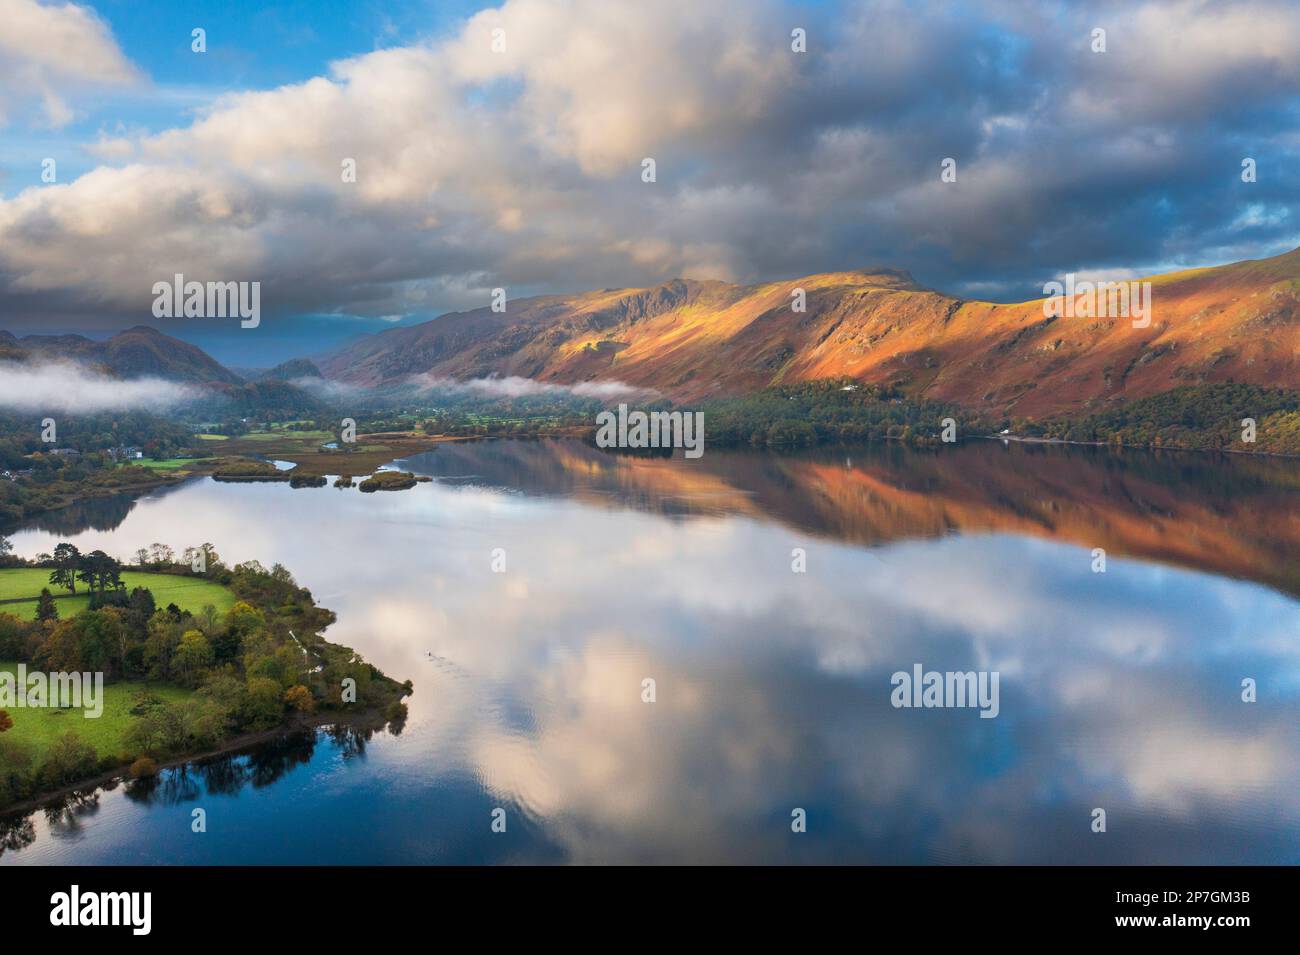 Angleterre, Cumbria, parc national de Lake District. Vue aérienne de Derwentwater, un lac populaire près de Keswick, à l'aube. Banque D'Images